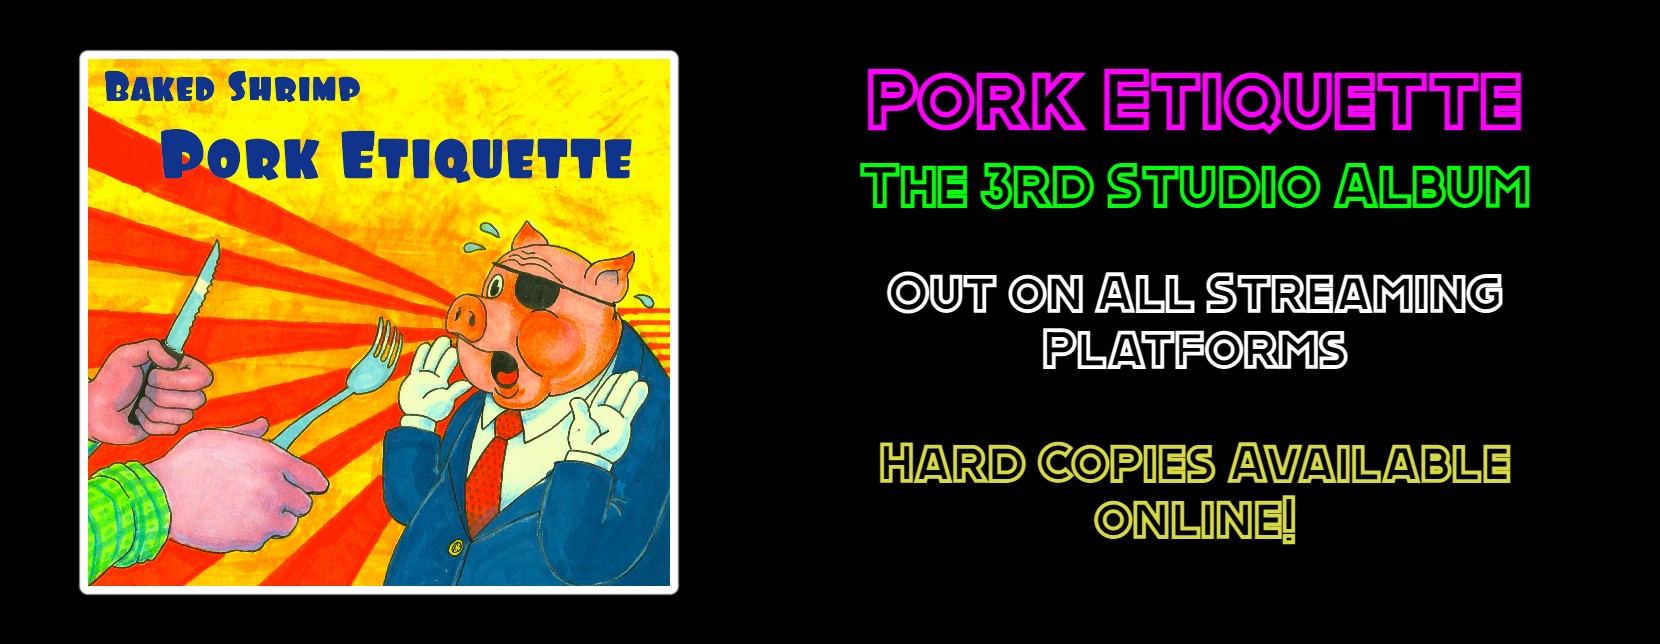 Pork Etiquette